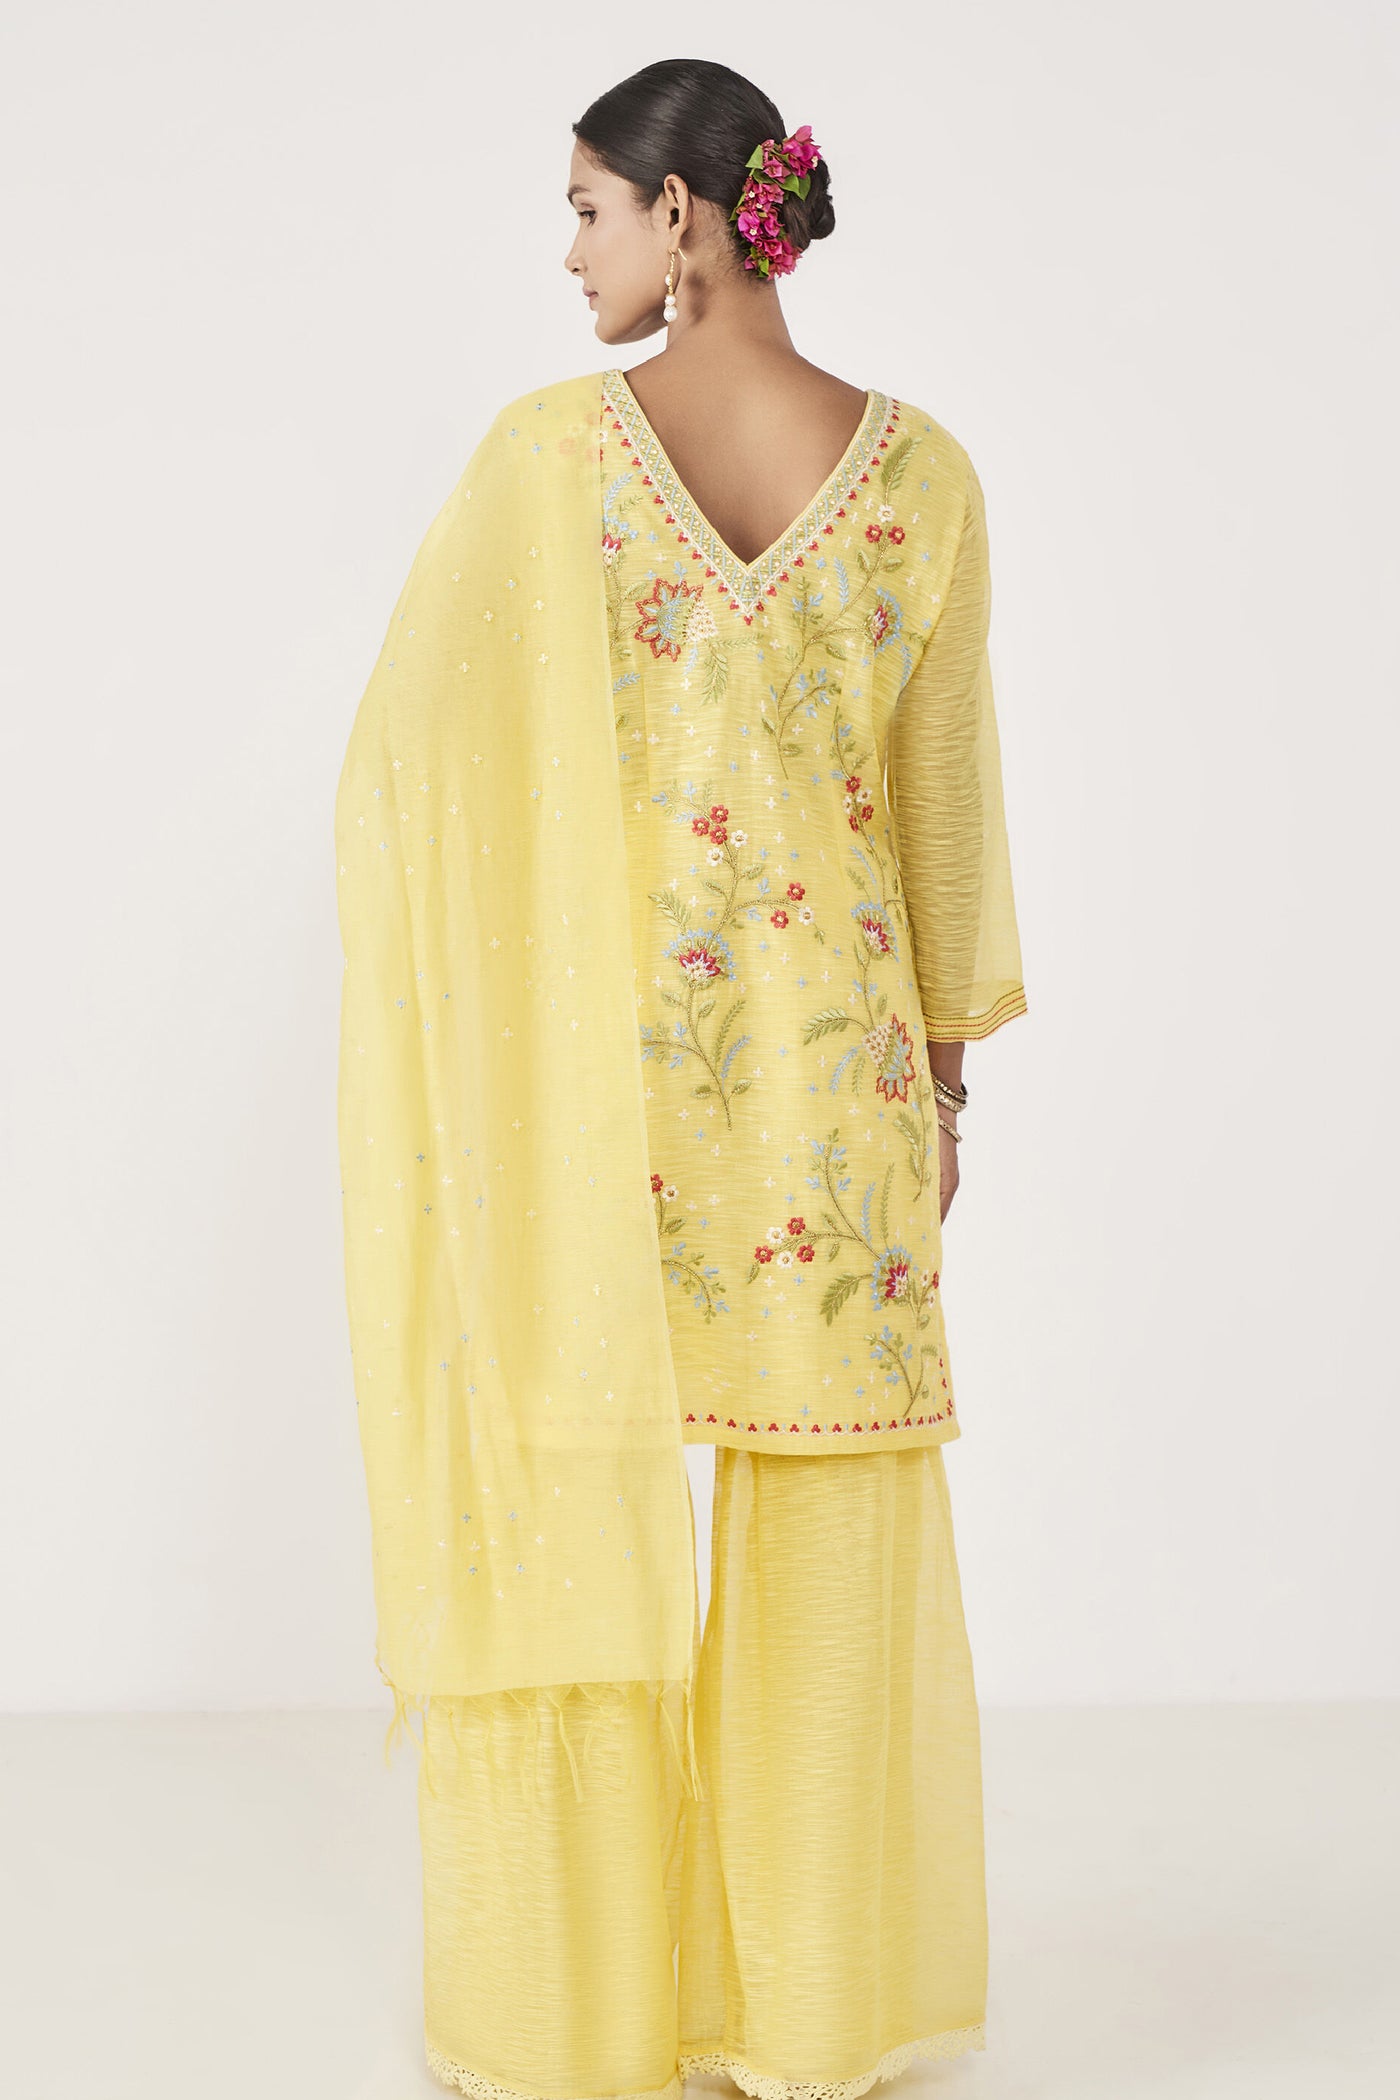 Anita Dongre Nirup Gharara Set Yellow Indian designer wear online shopping melange singapore